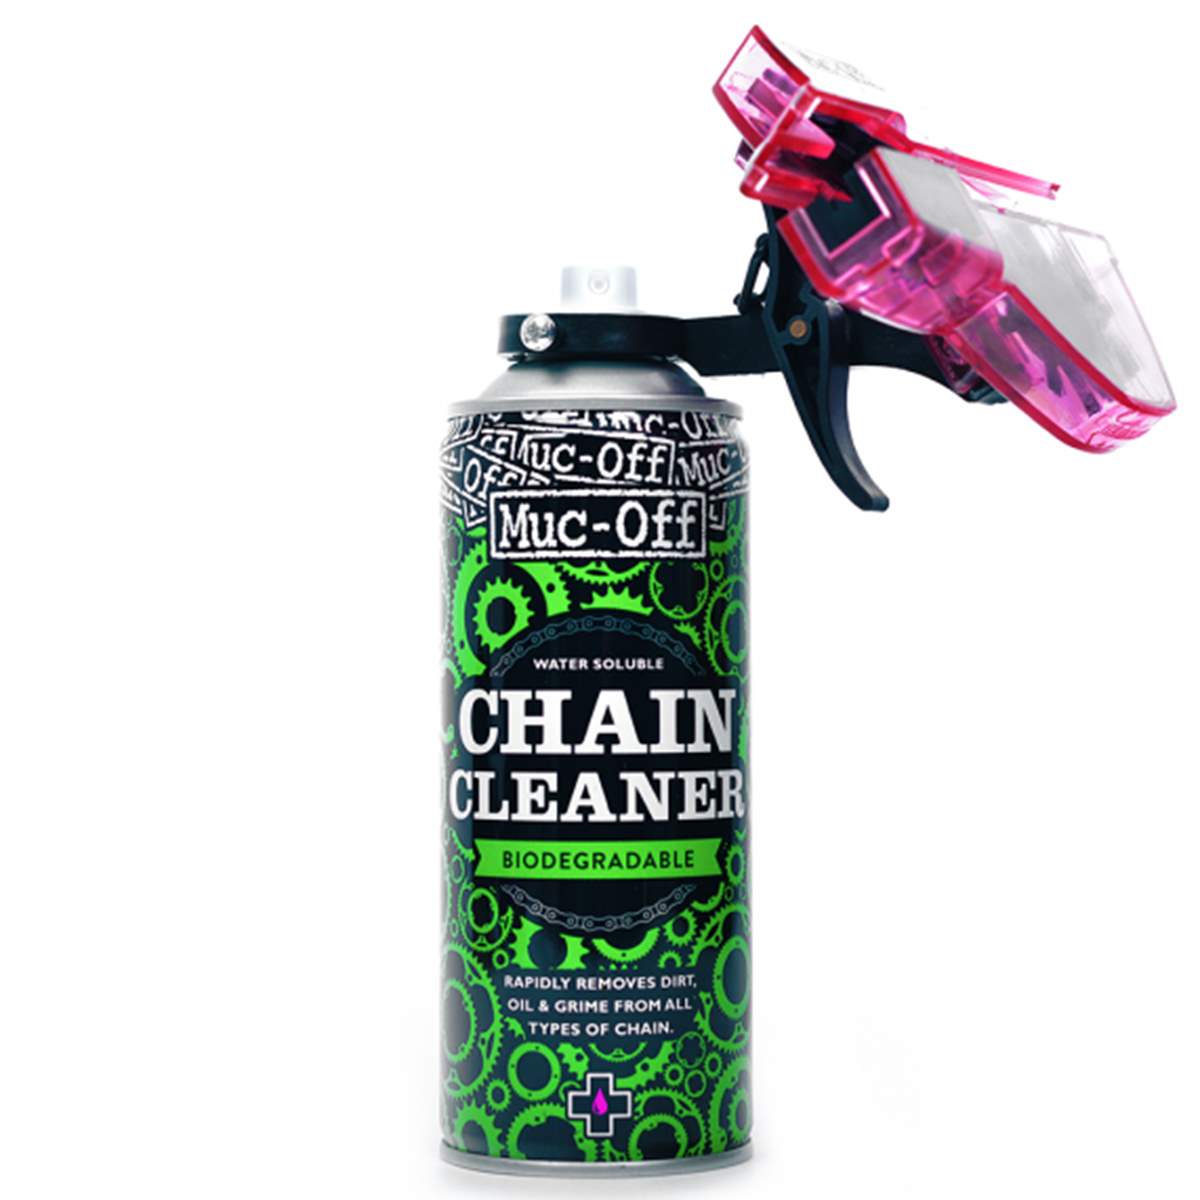 Muc-Off Lavacatena Chain Doc con Chain Cleaner Liquid, 400 ml